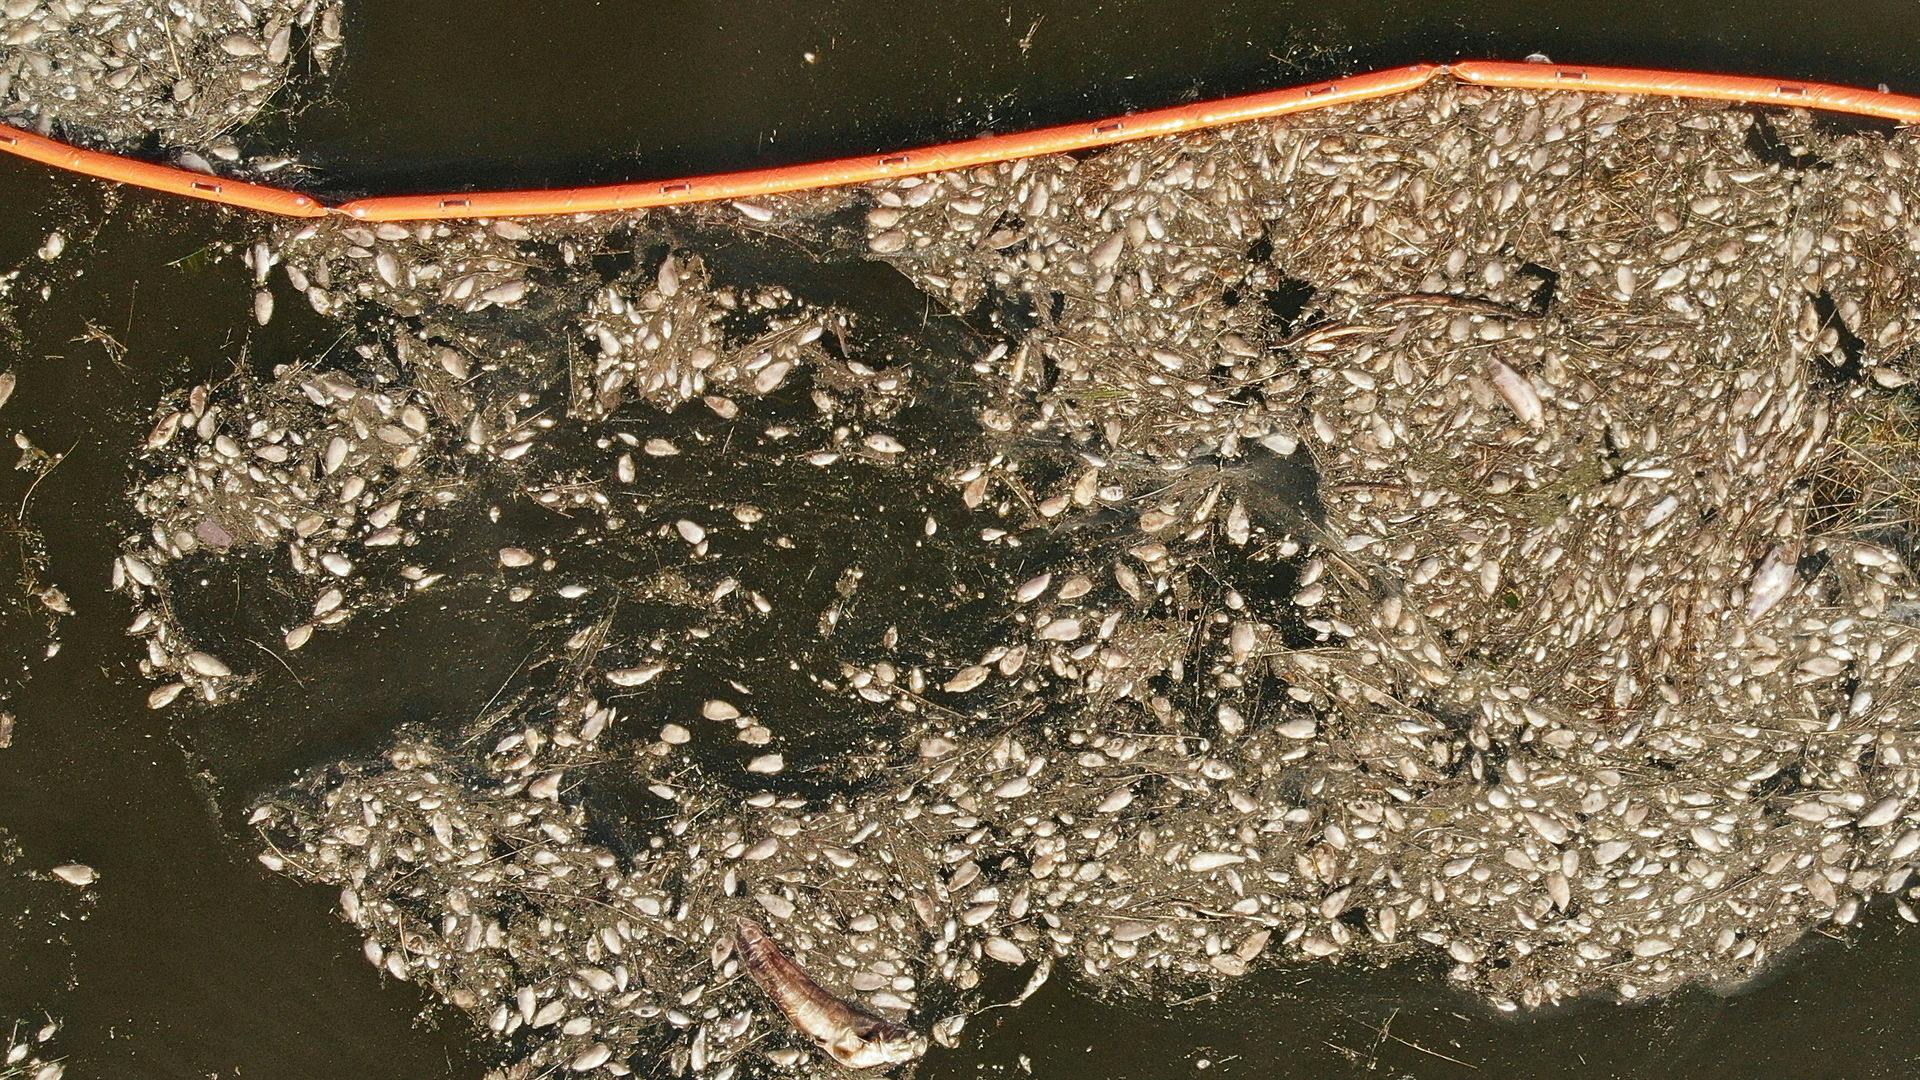 Tonsvis af døde fisk i flode Oder.